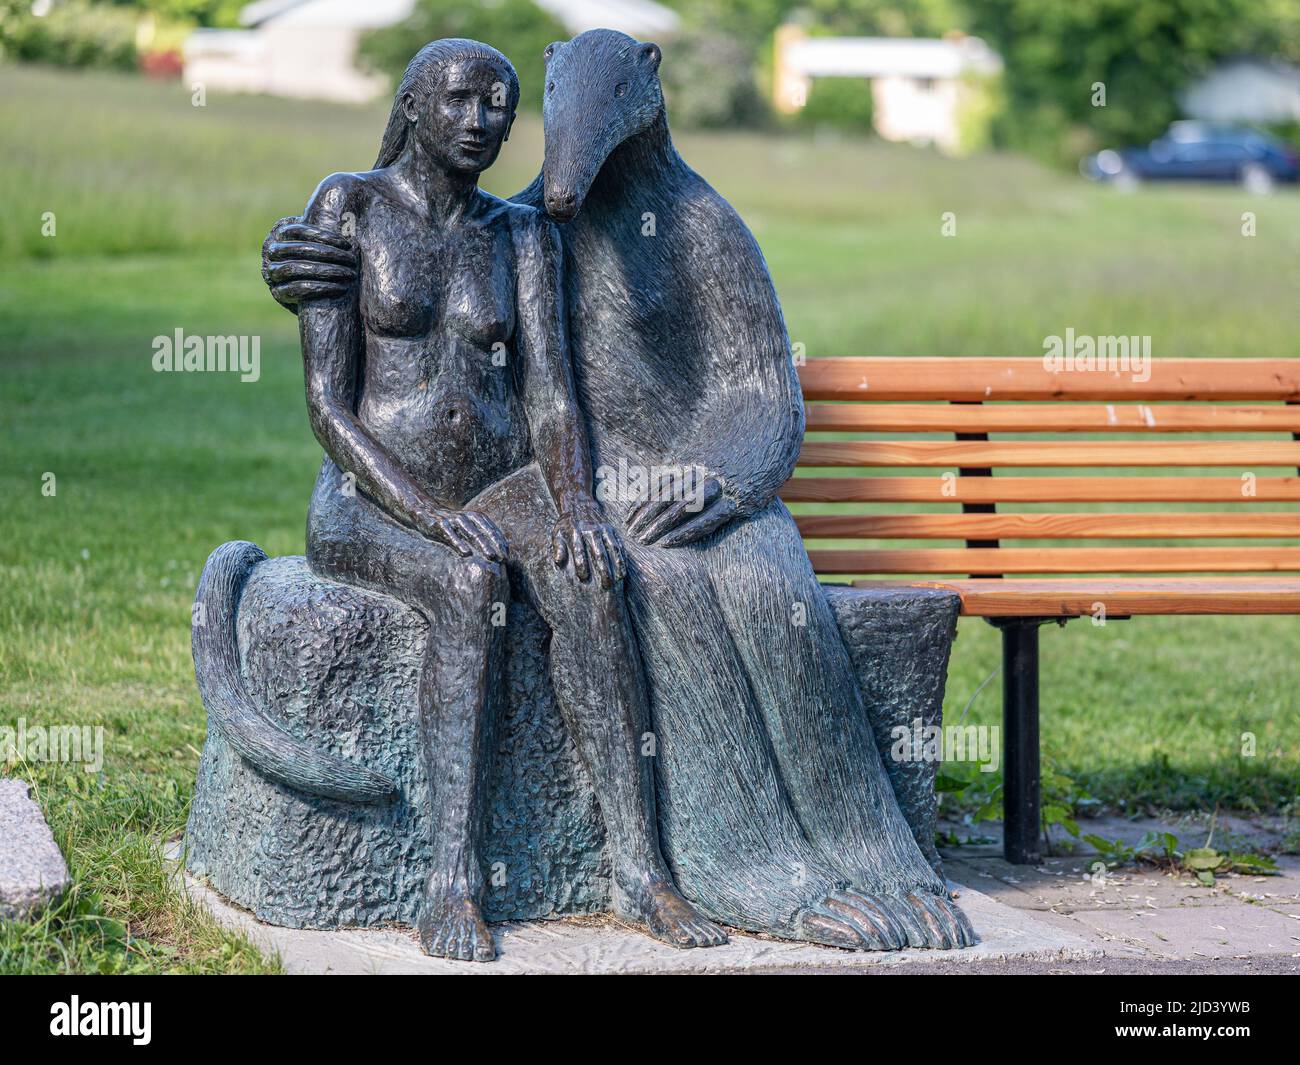 Arte público en Norrkoping, Suecia. 'Sabio consejo de una simple dama' escultura de bronce de 2011 por Marianne Arnbäck situado en el parque Hageby Foto de stock